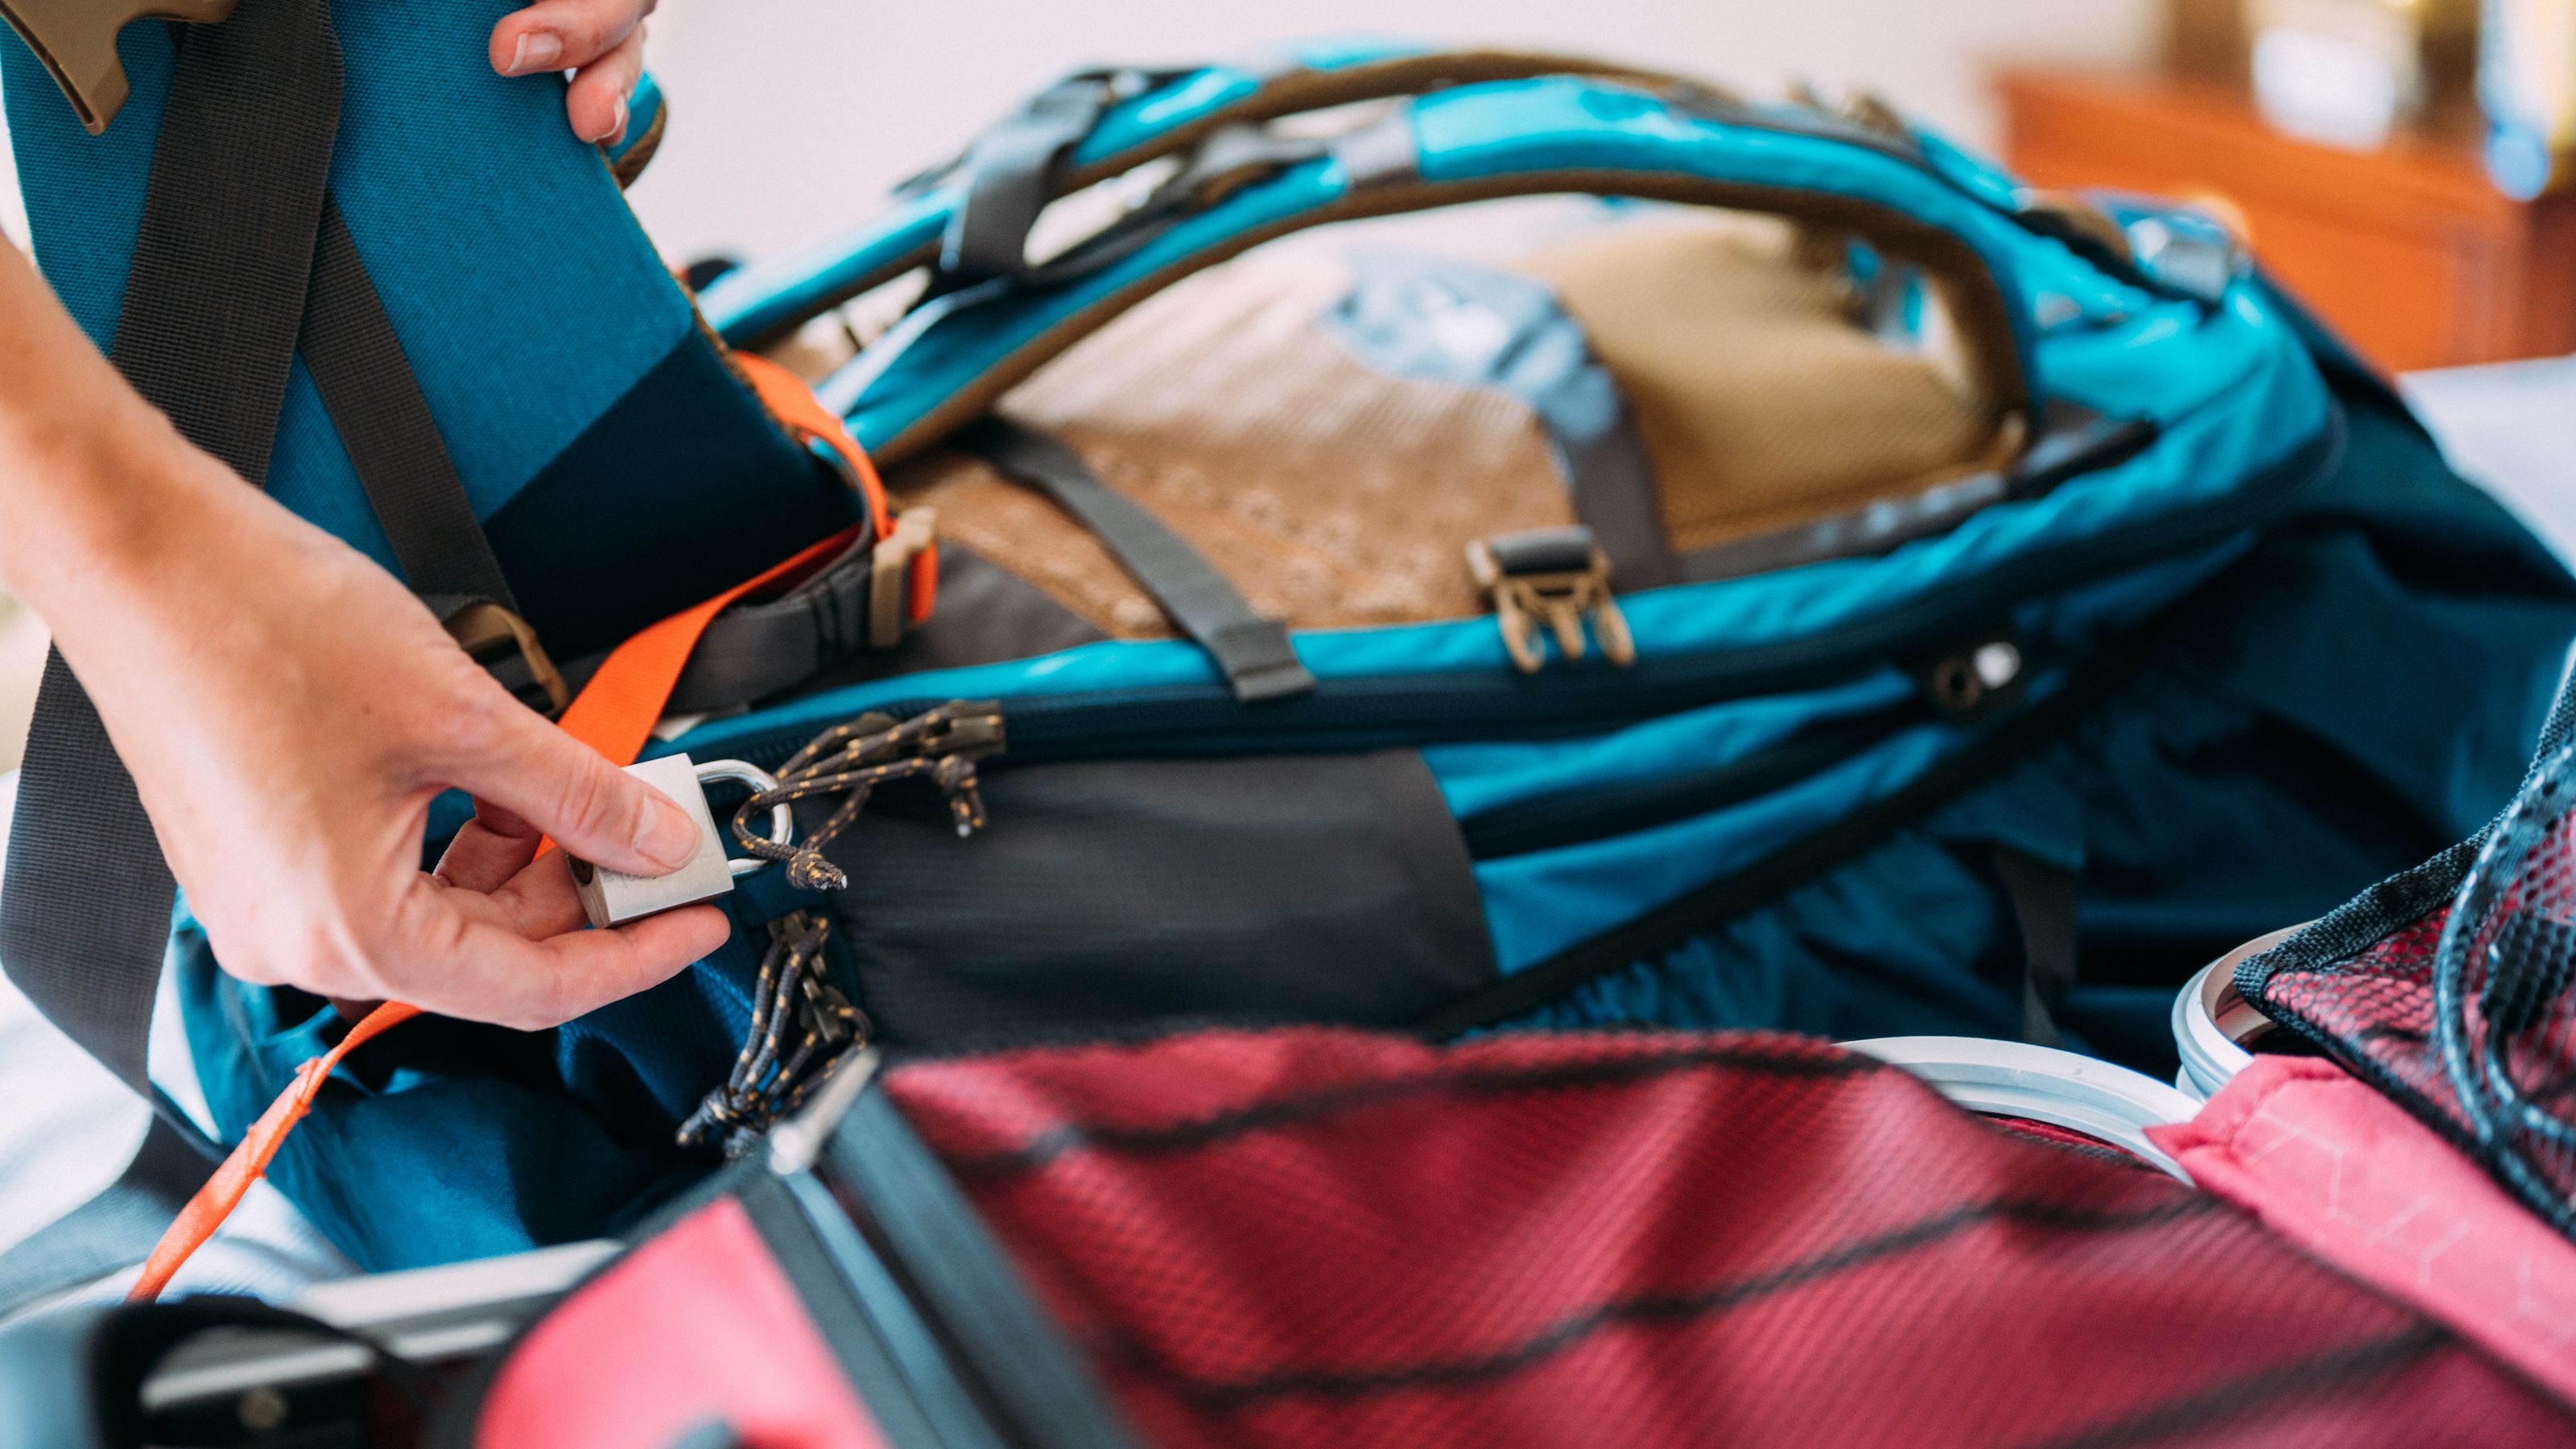 Mini Luggage Locks, Colorful Suitcase Padlocks with Keys (4 Pack)